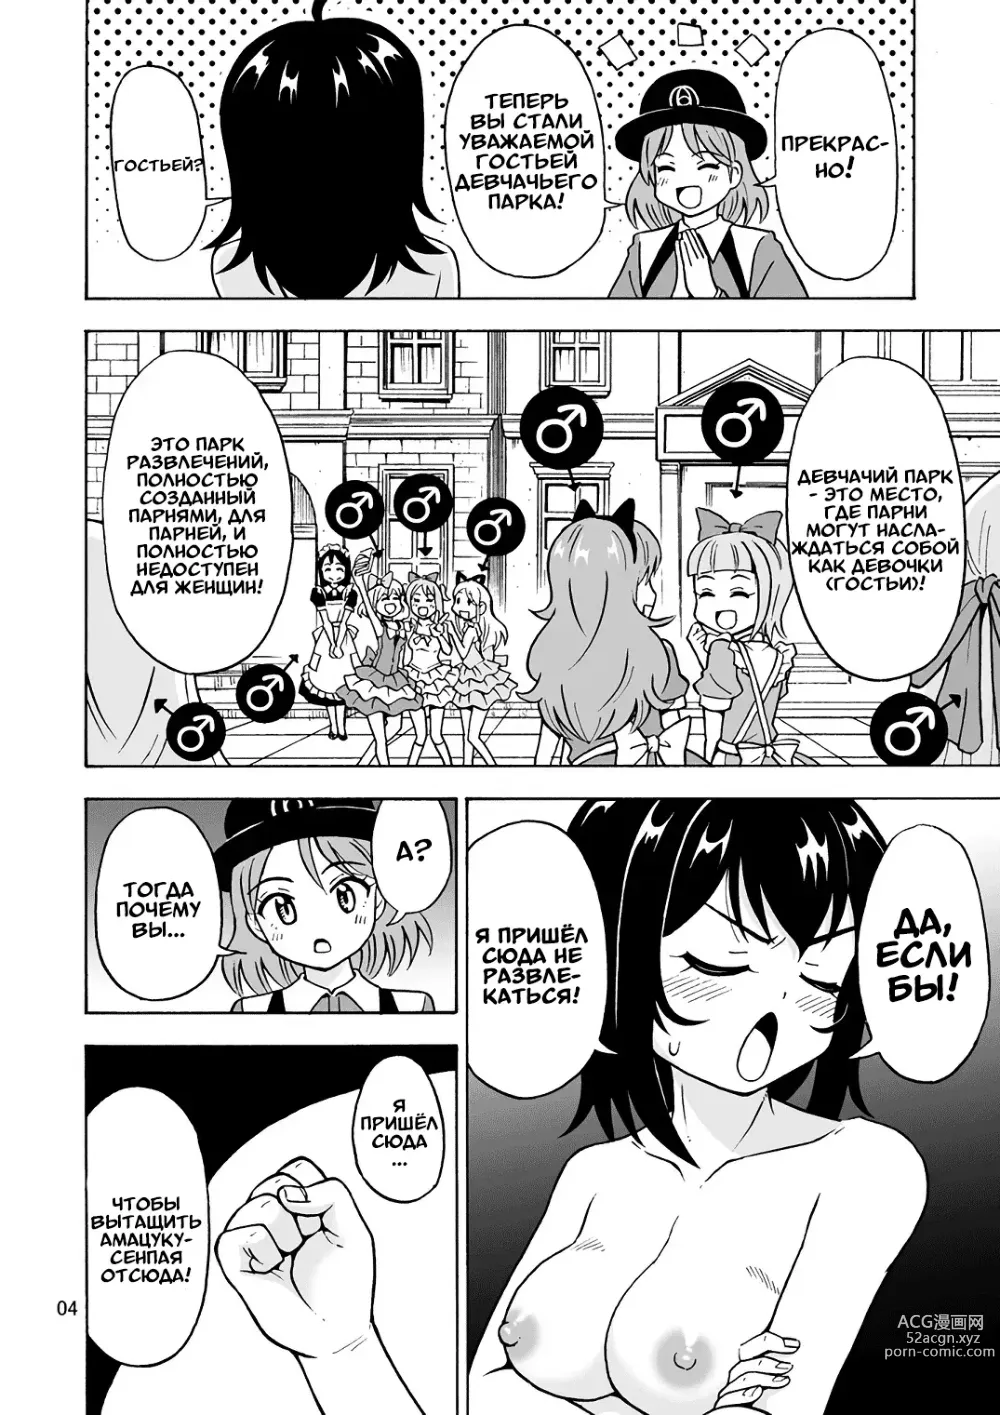 Page 5 of doujinshi Приходите в Страну девушек